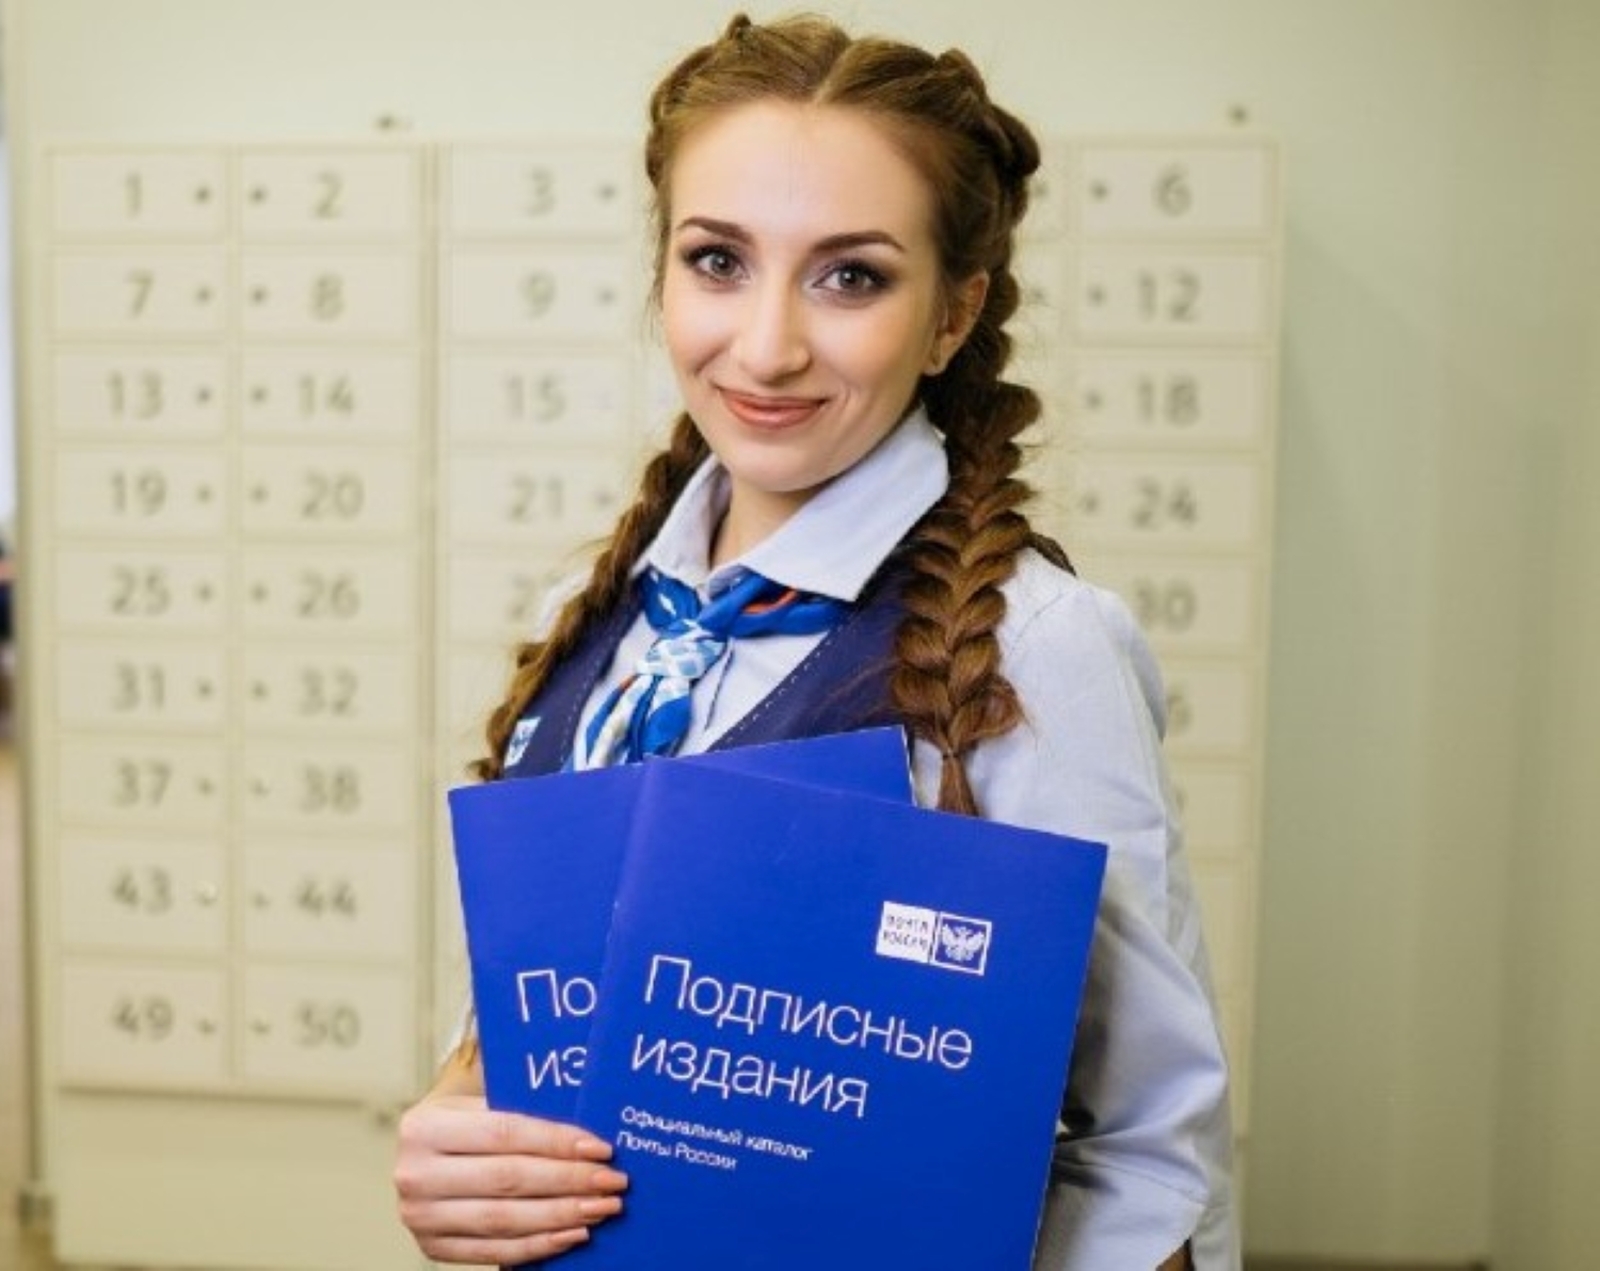 Жители Башкирии могут подарить учителям подписку на профессиональные издания со скидкой